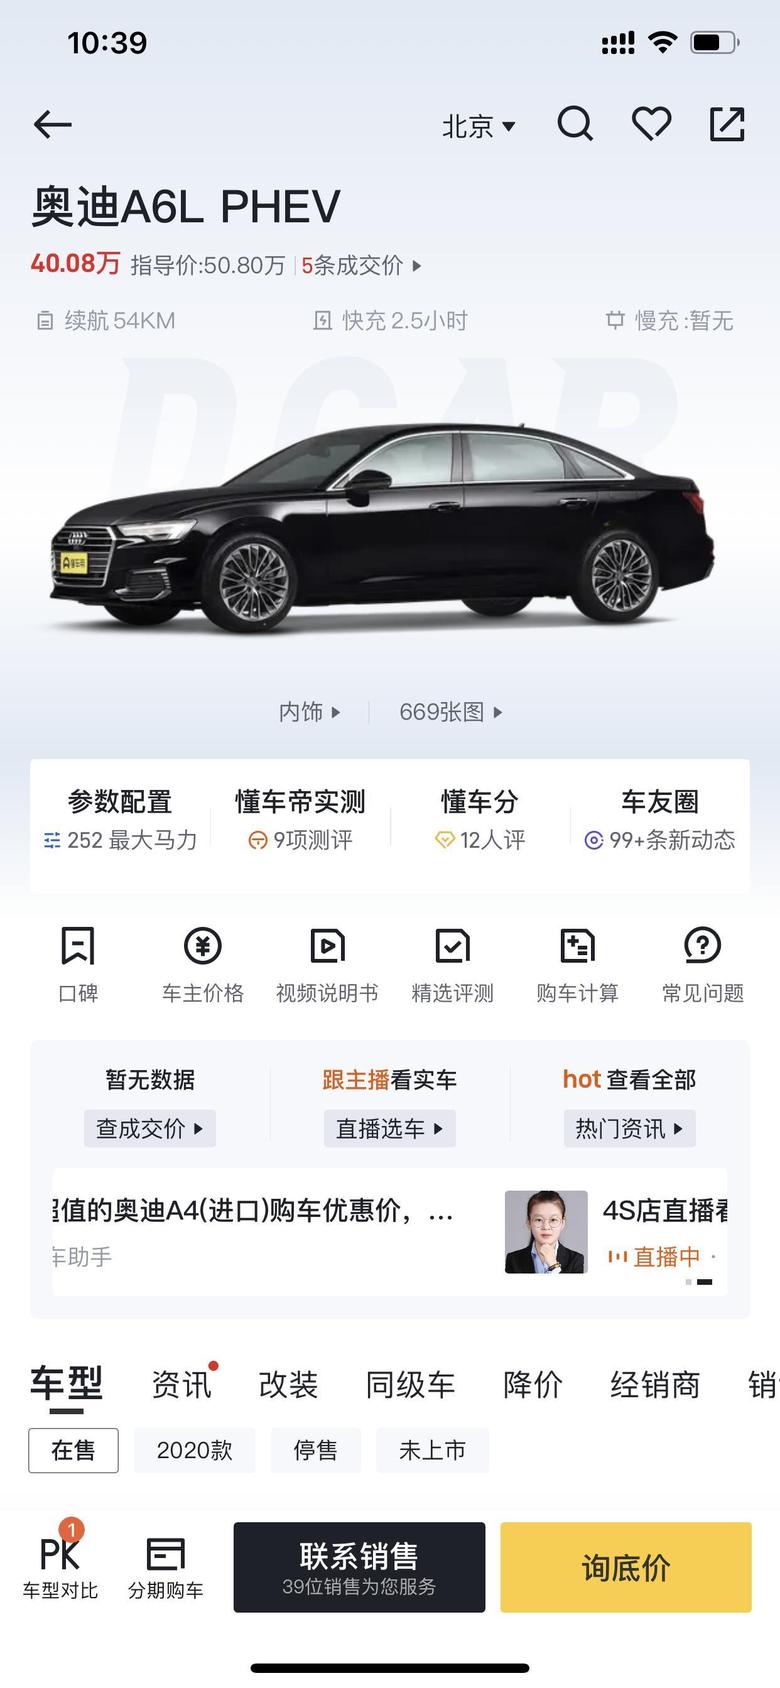 奥迪a6l phev北京新能源指标排到了现在可以买这辆车吗混动车在北京是必须用油车牌照还是可以用新能源牌照